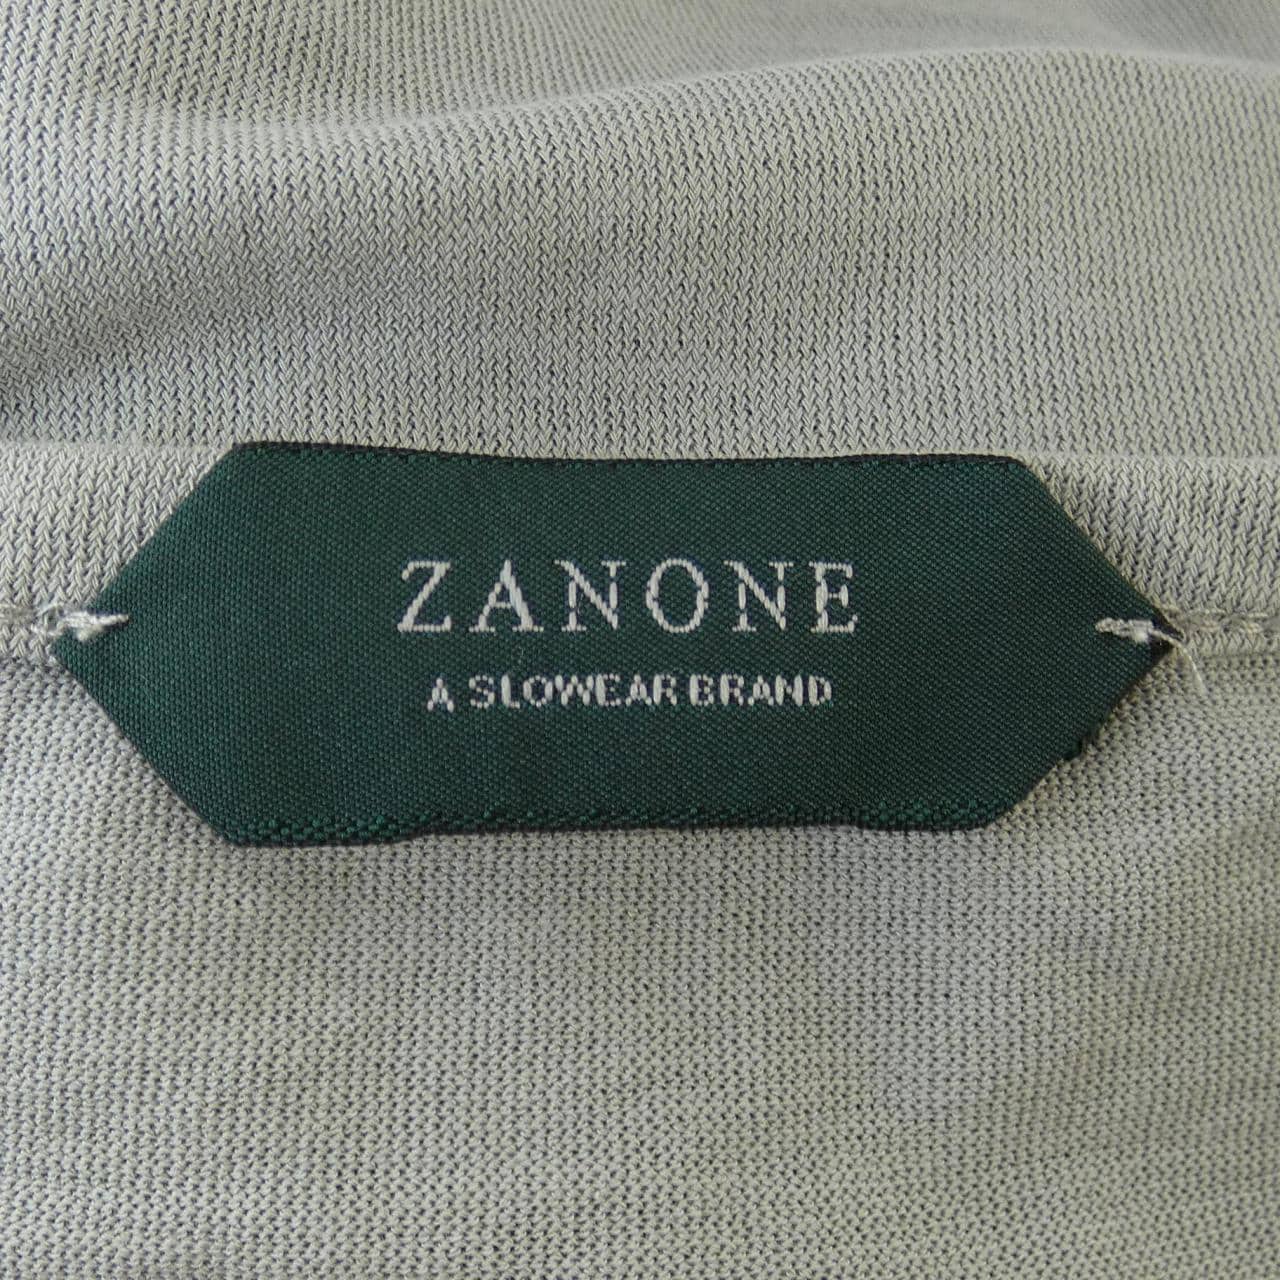 ZANONE T恤